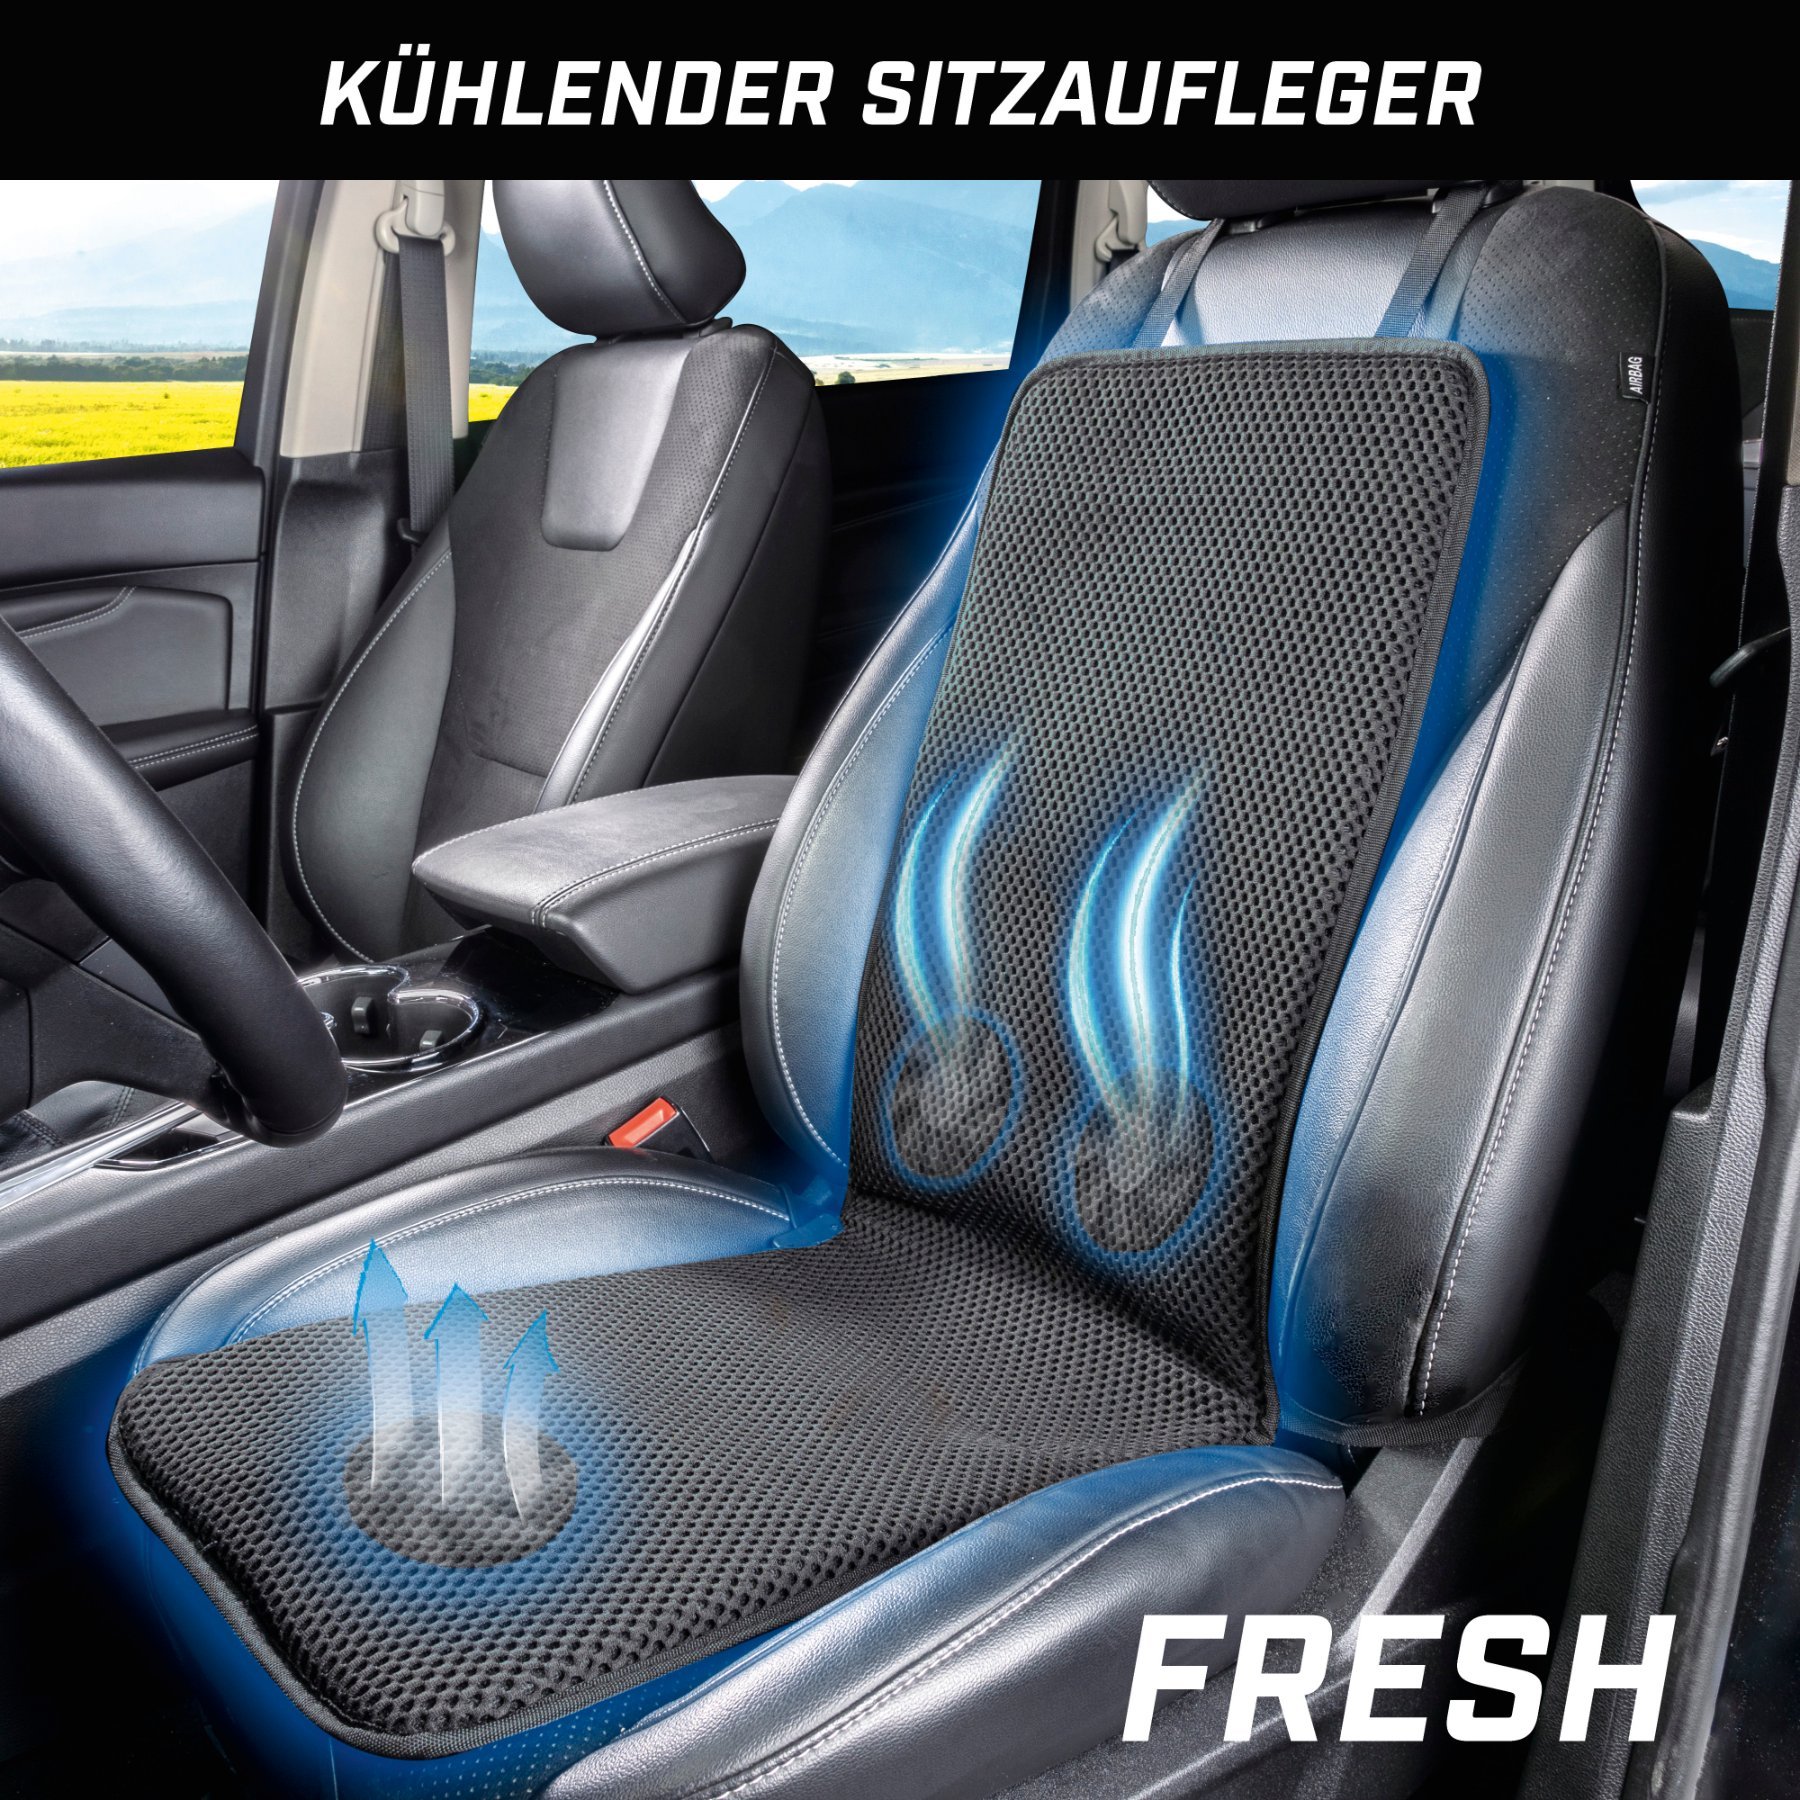 PKW Sitzauflage Fresh mit Kühlfunktion, Auto-Sitzaufleger atmungsaktiv schwarz